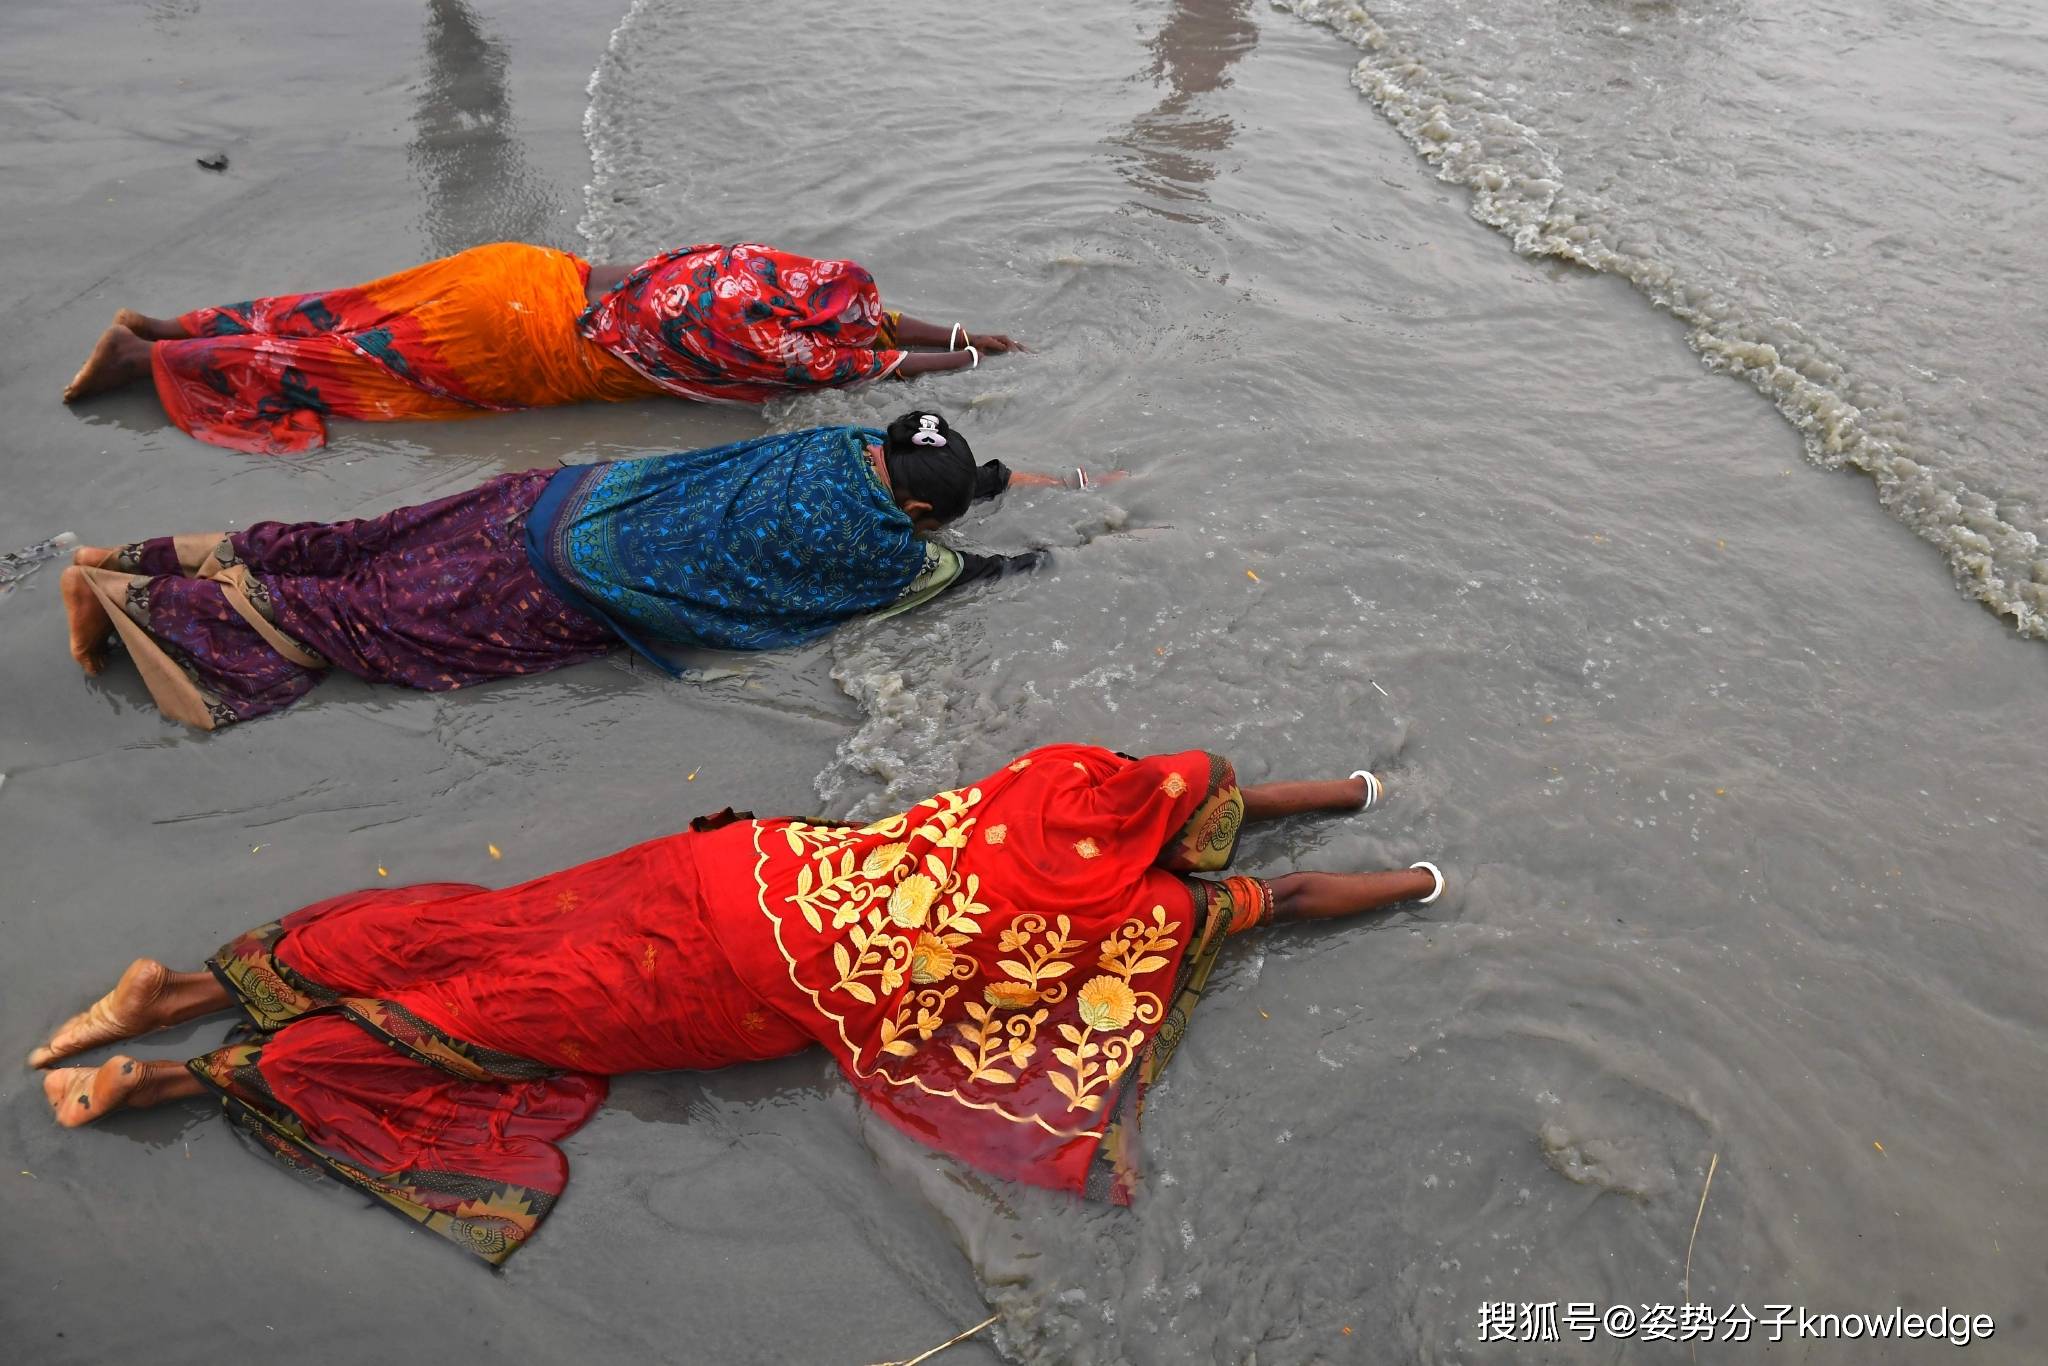 印度人跳进恒河避暑,大肠杆菌超标500倍,为啥这么脏?